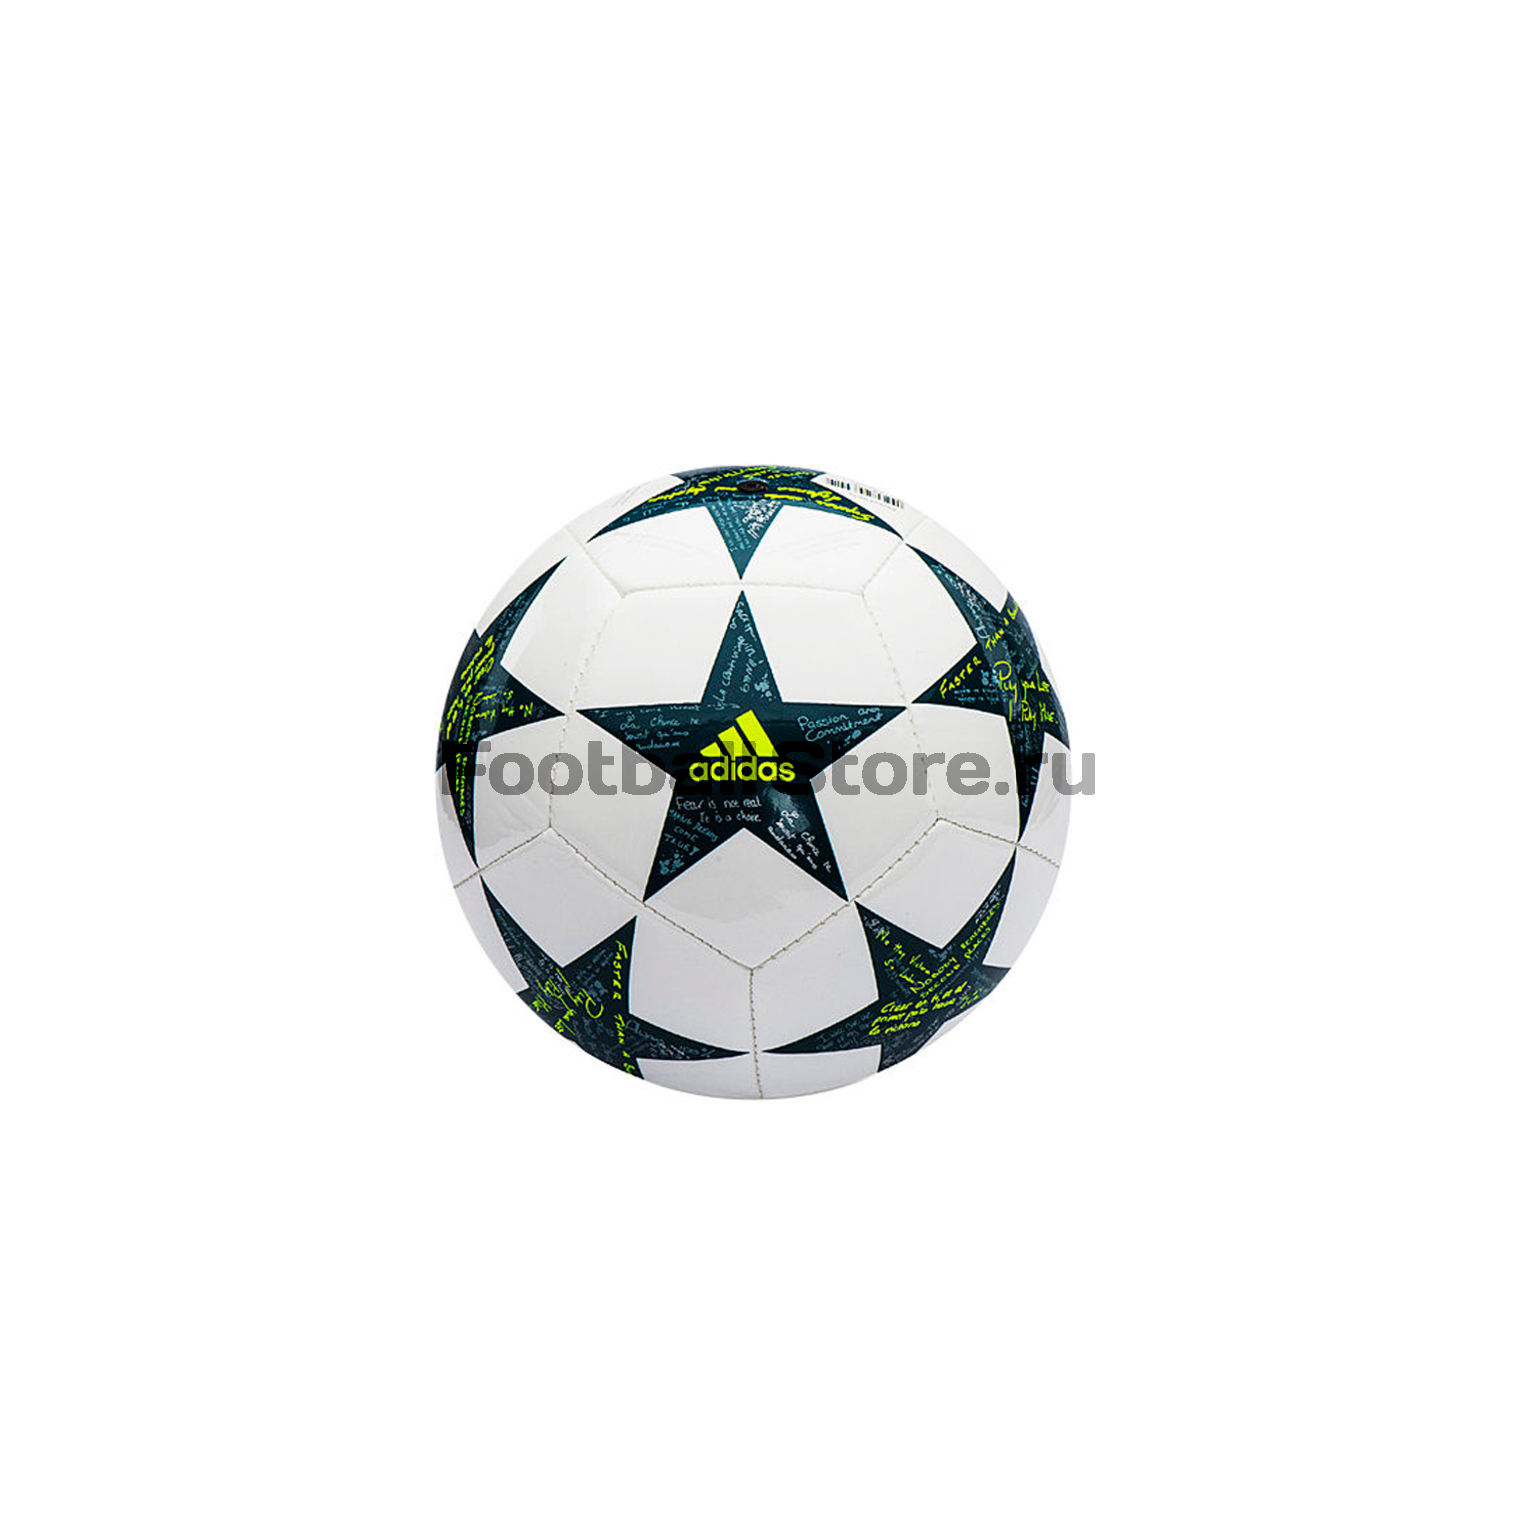 Мяч сувенирный Adidas Finale 16 Mini AP0380 